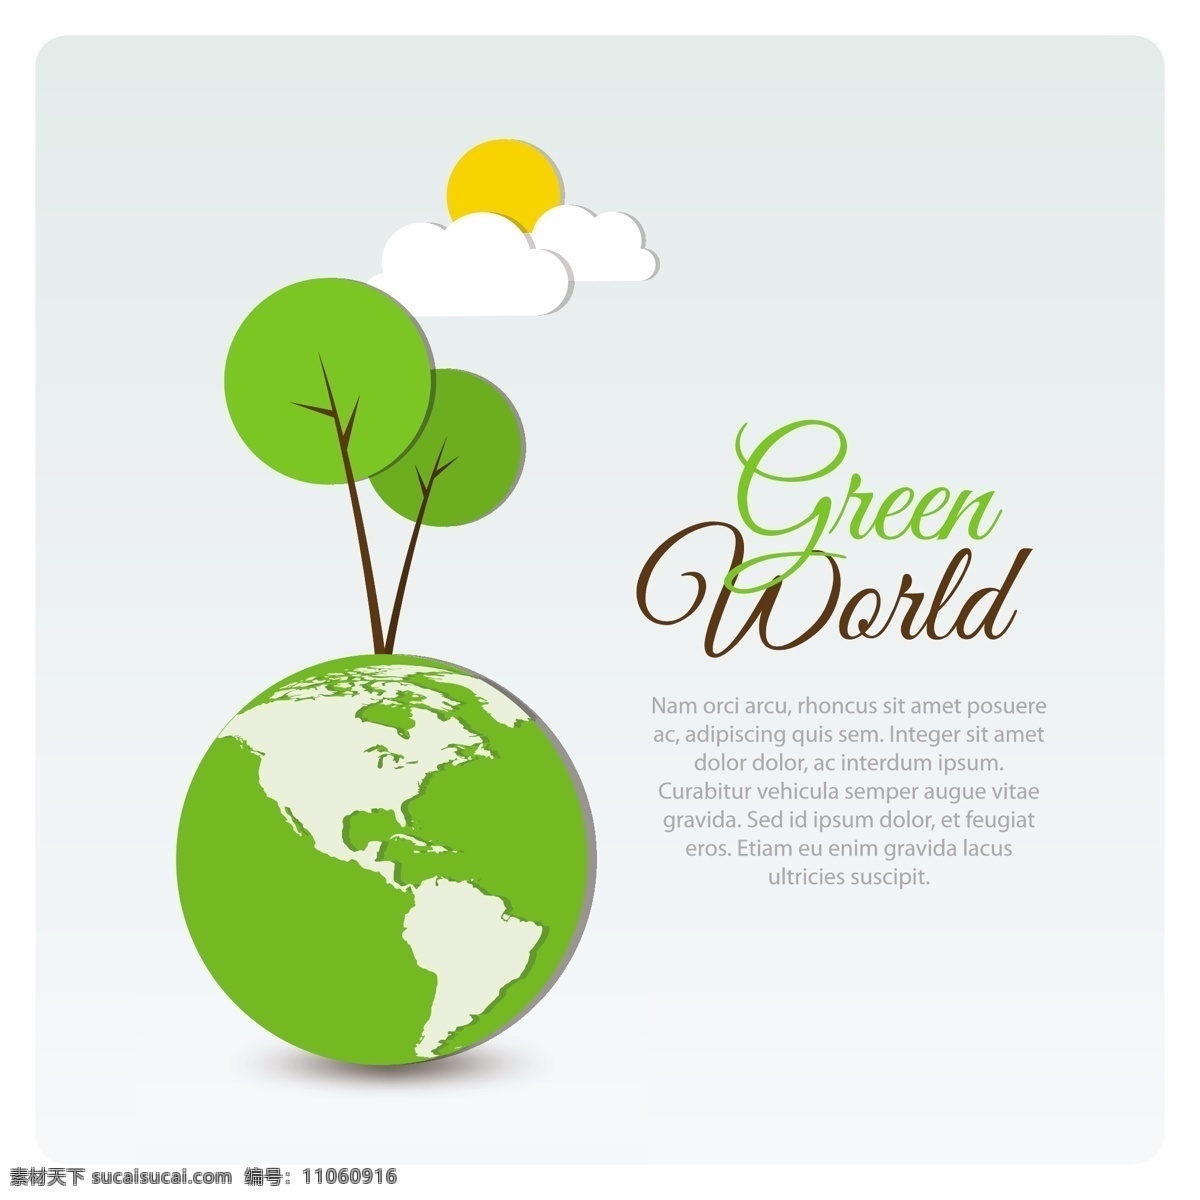 绿色 世界 海报 矢量 矢量素材 设计素材 白色